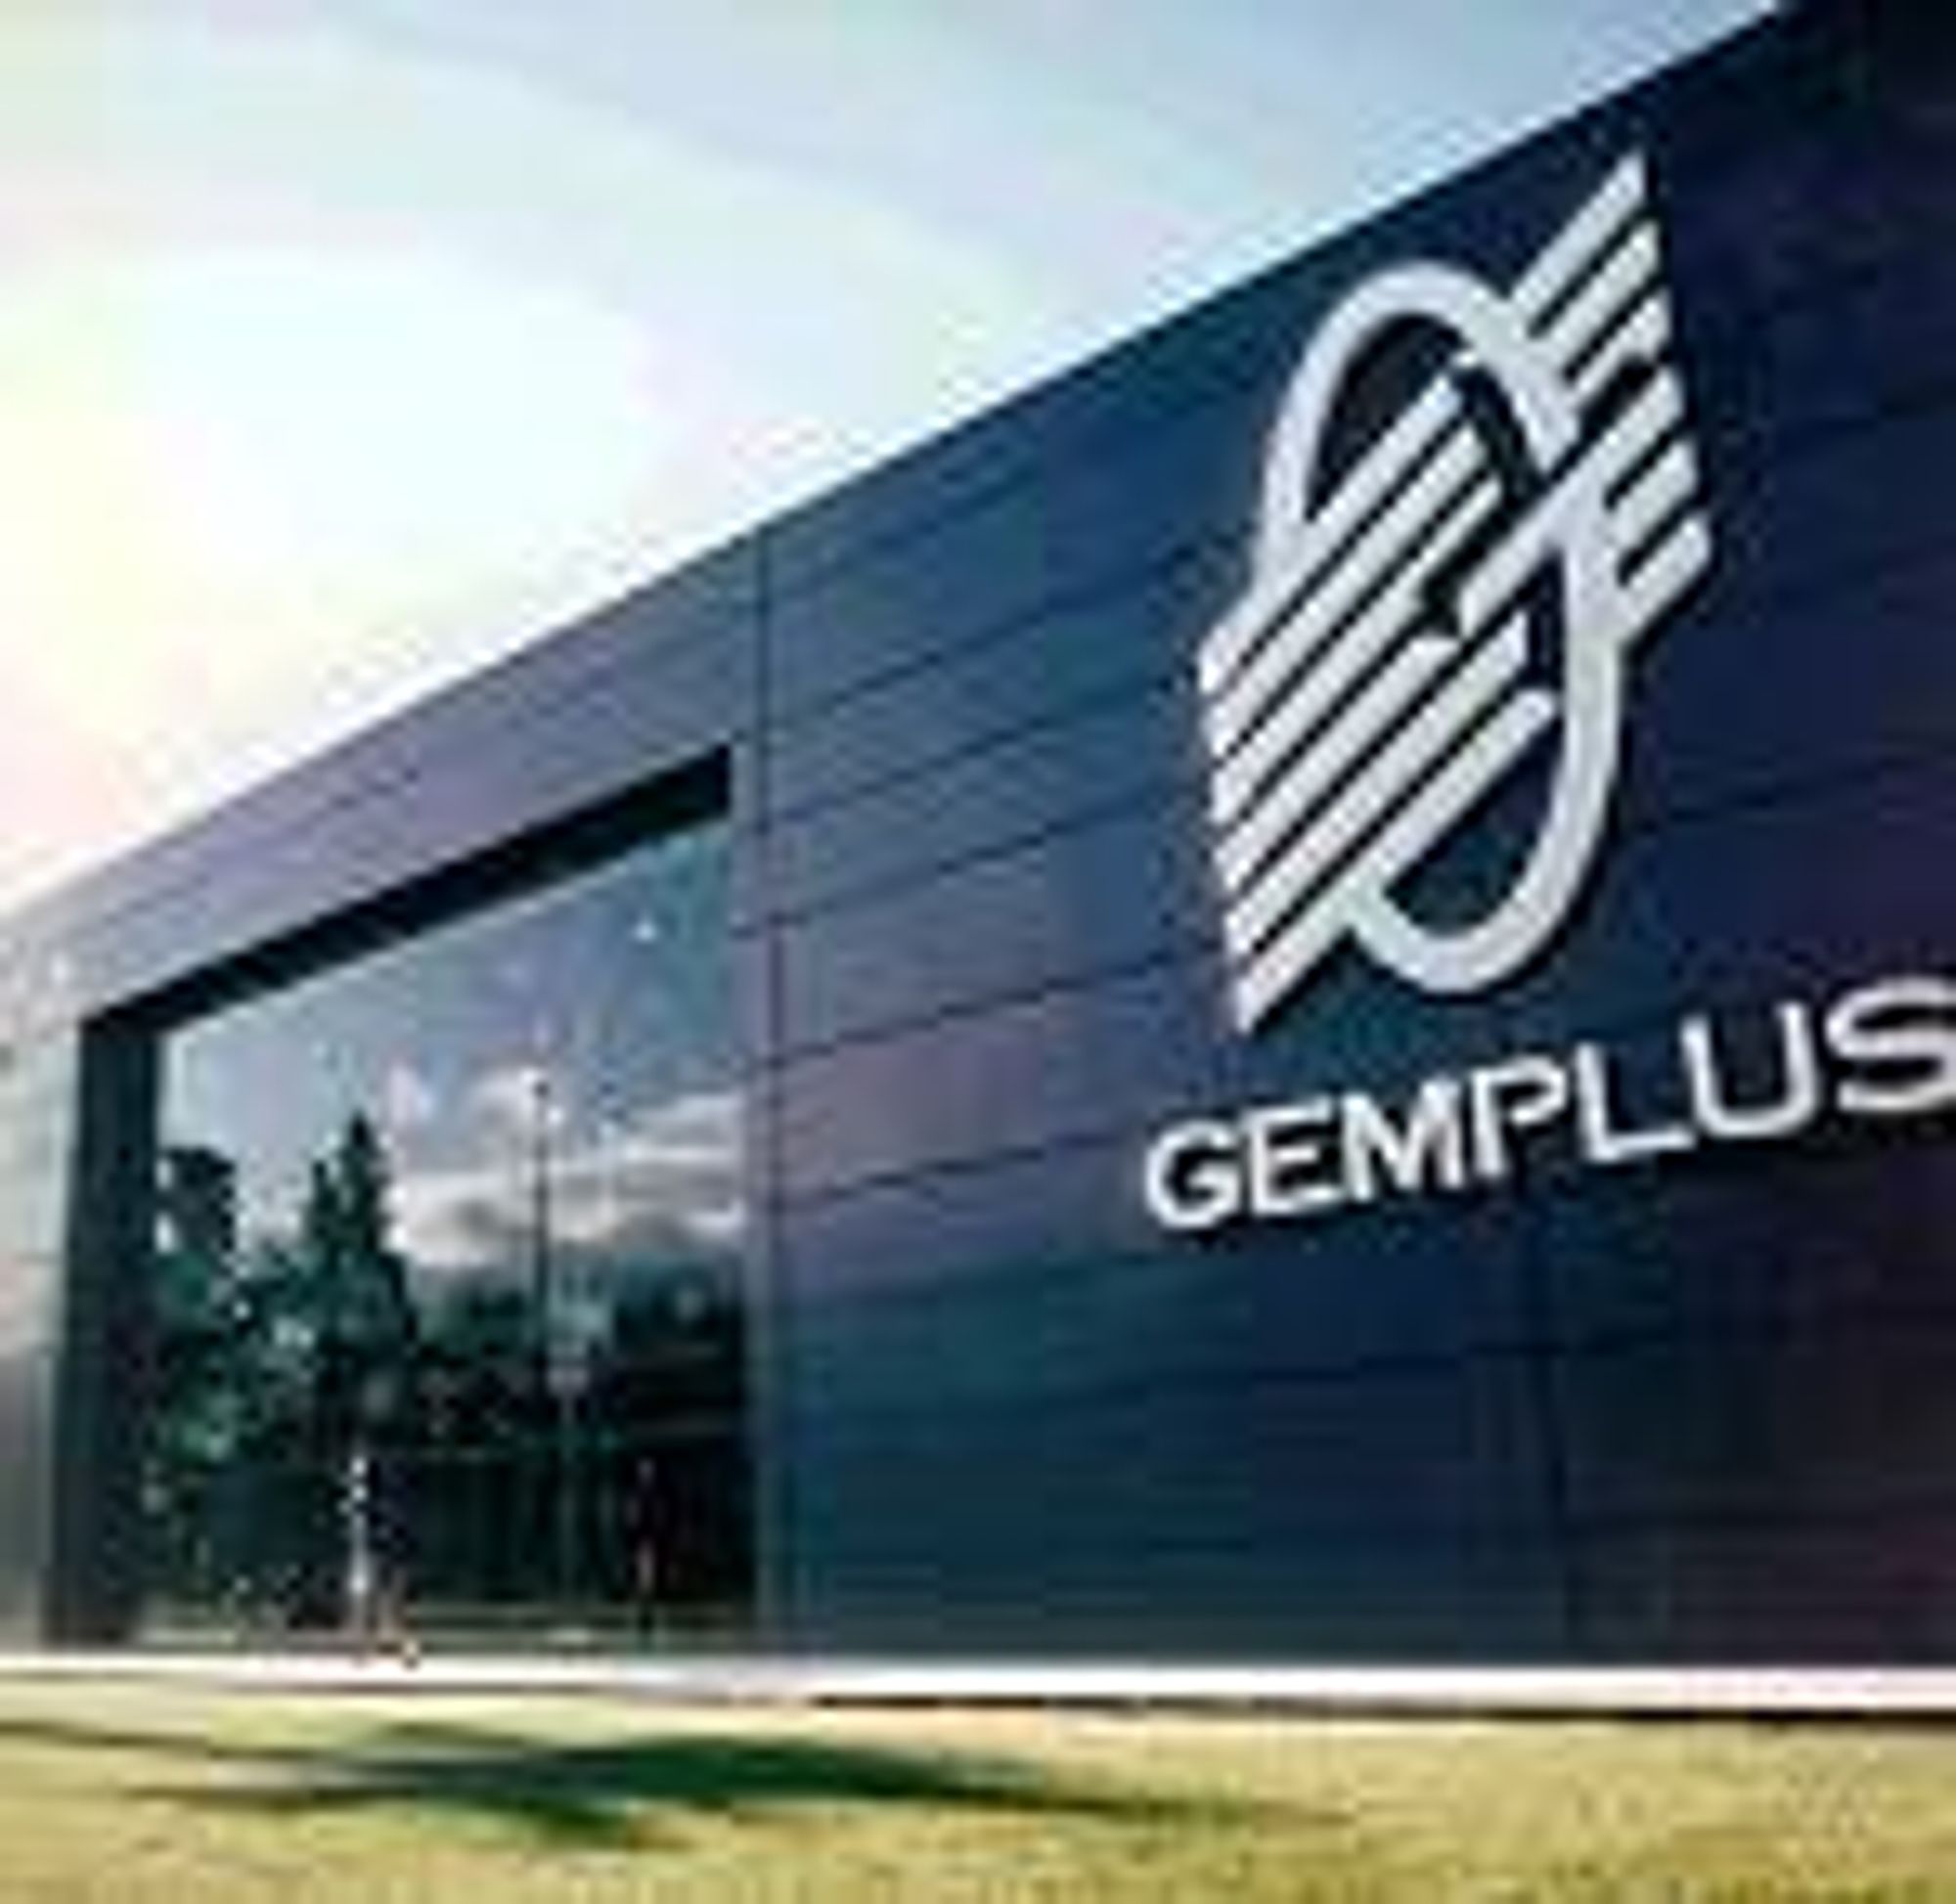 Gemplus-fabrikken i Gemenos.